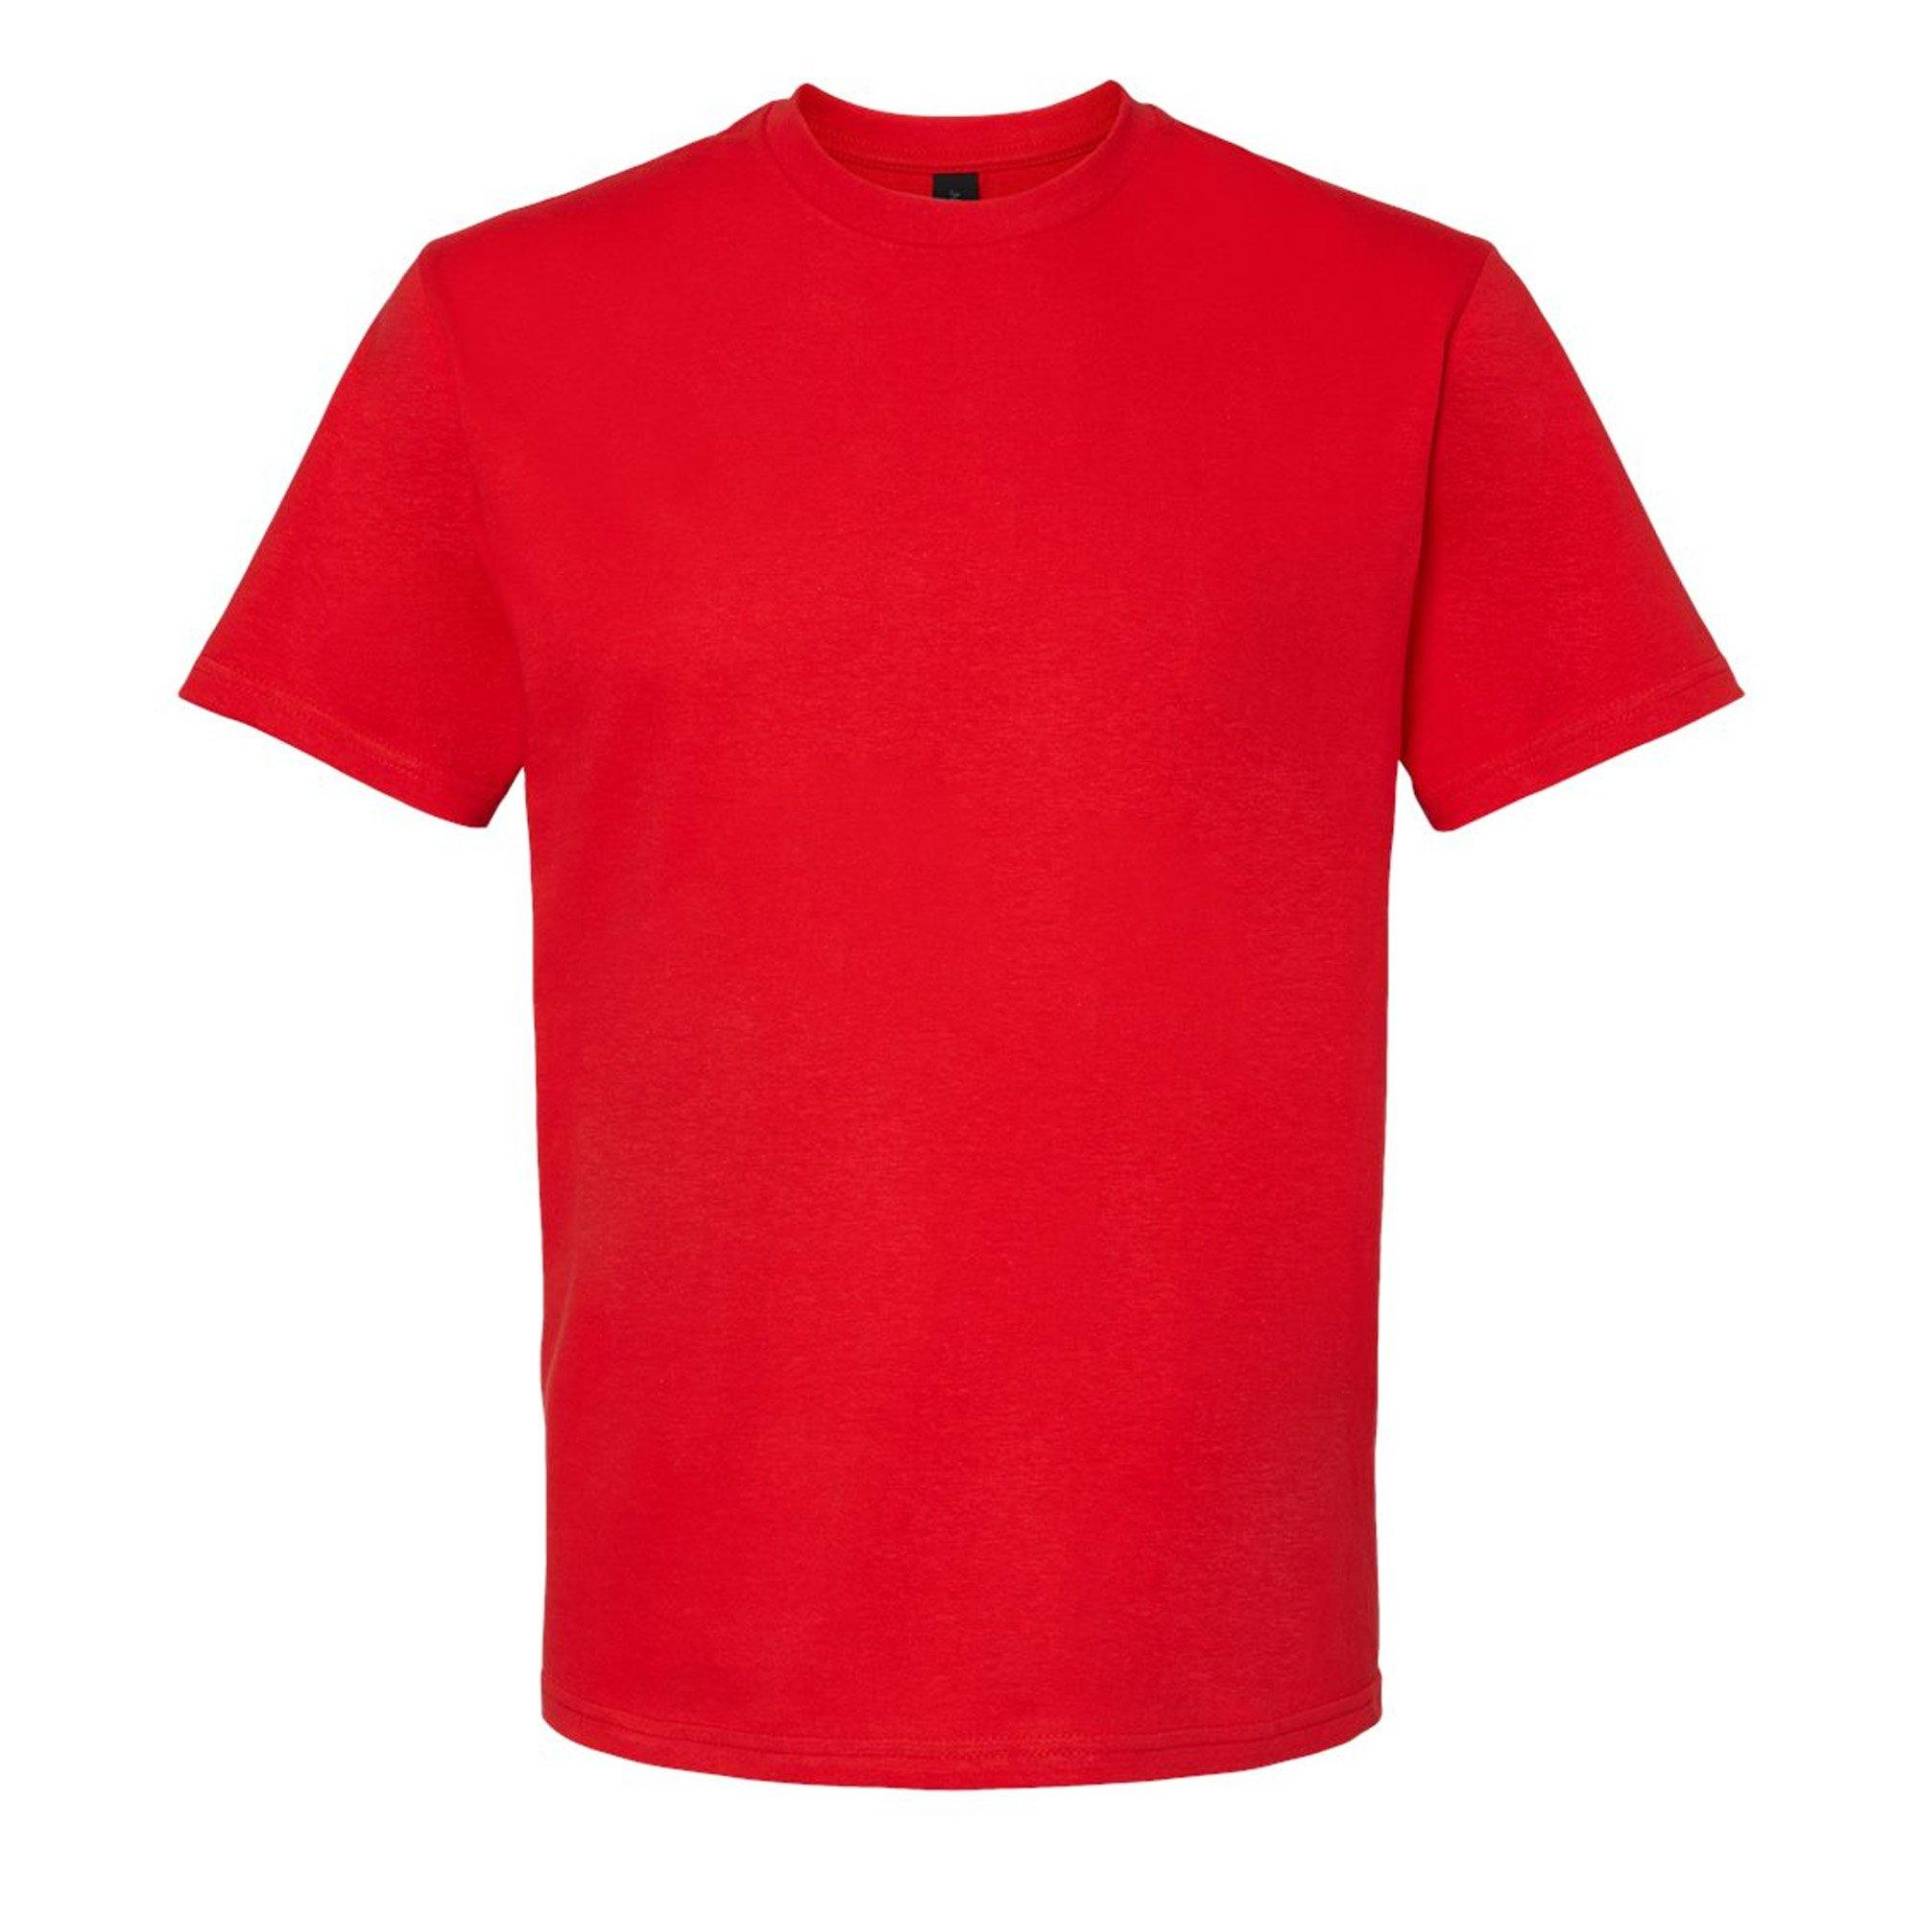 Softstyle Tshirt Damen Rot Bunt M von Gildan